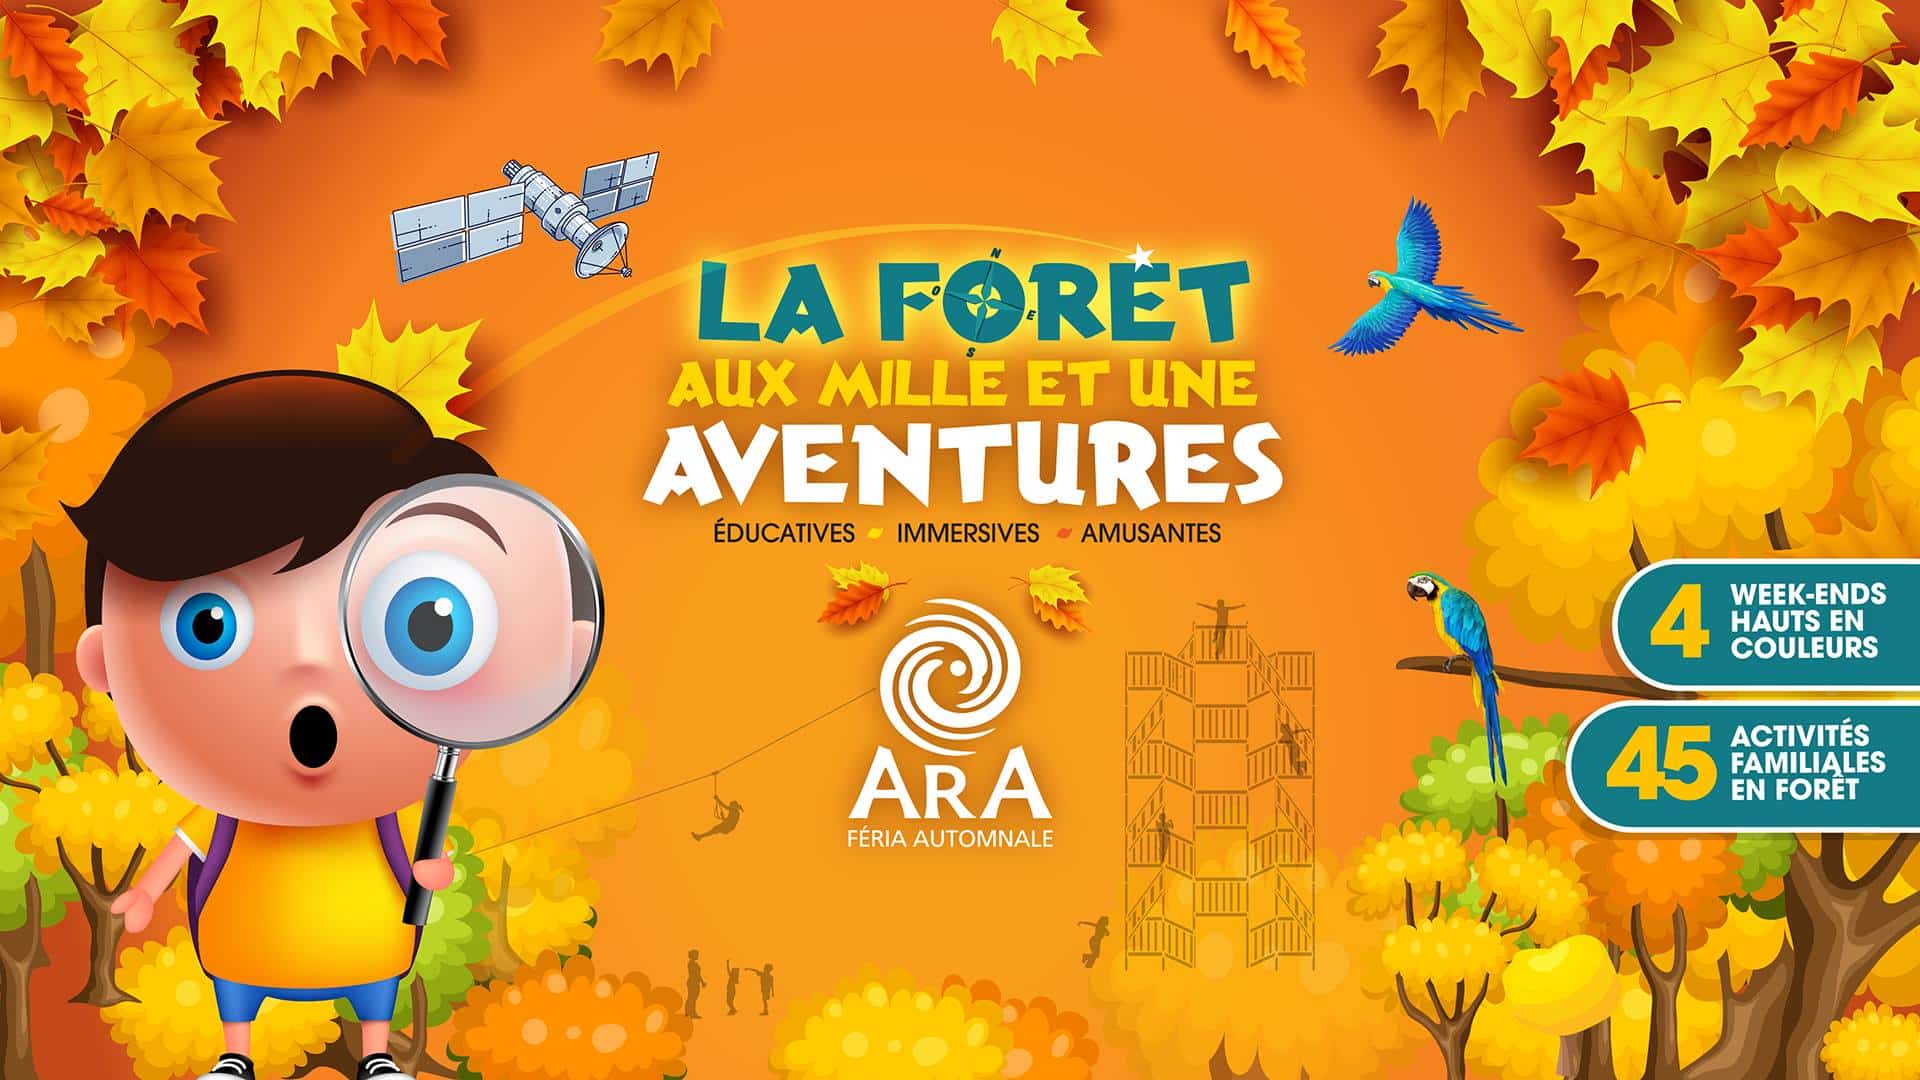 ARA Féria Automnale est un parc d'attractions extérieur ouvert du 29 septembre à 21 octobre à Saint-Calixte